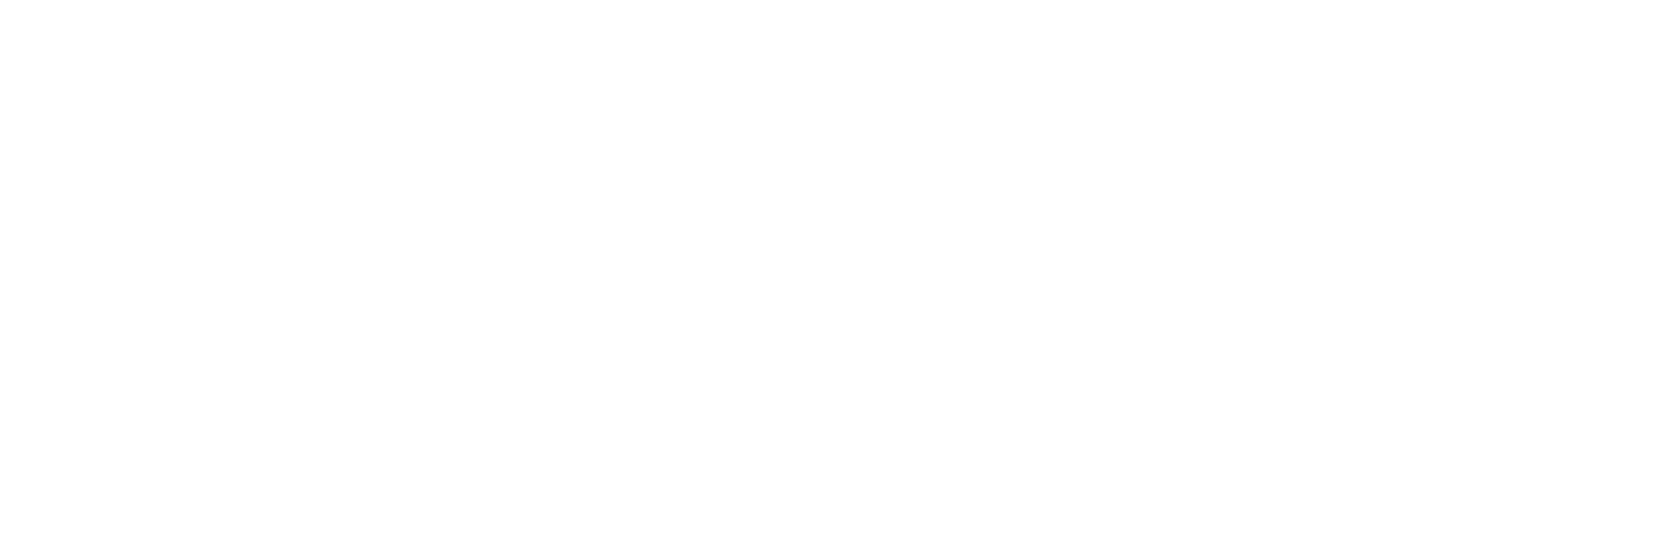 логотип pitf